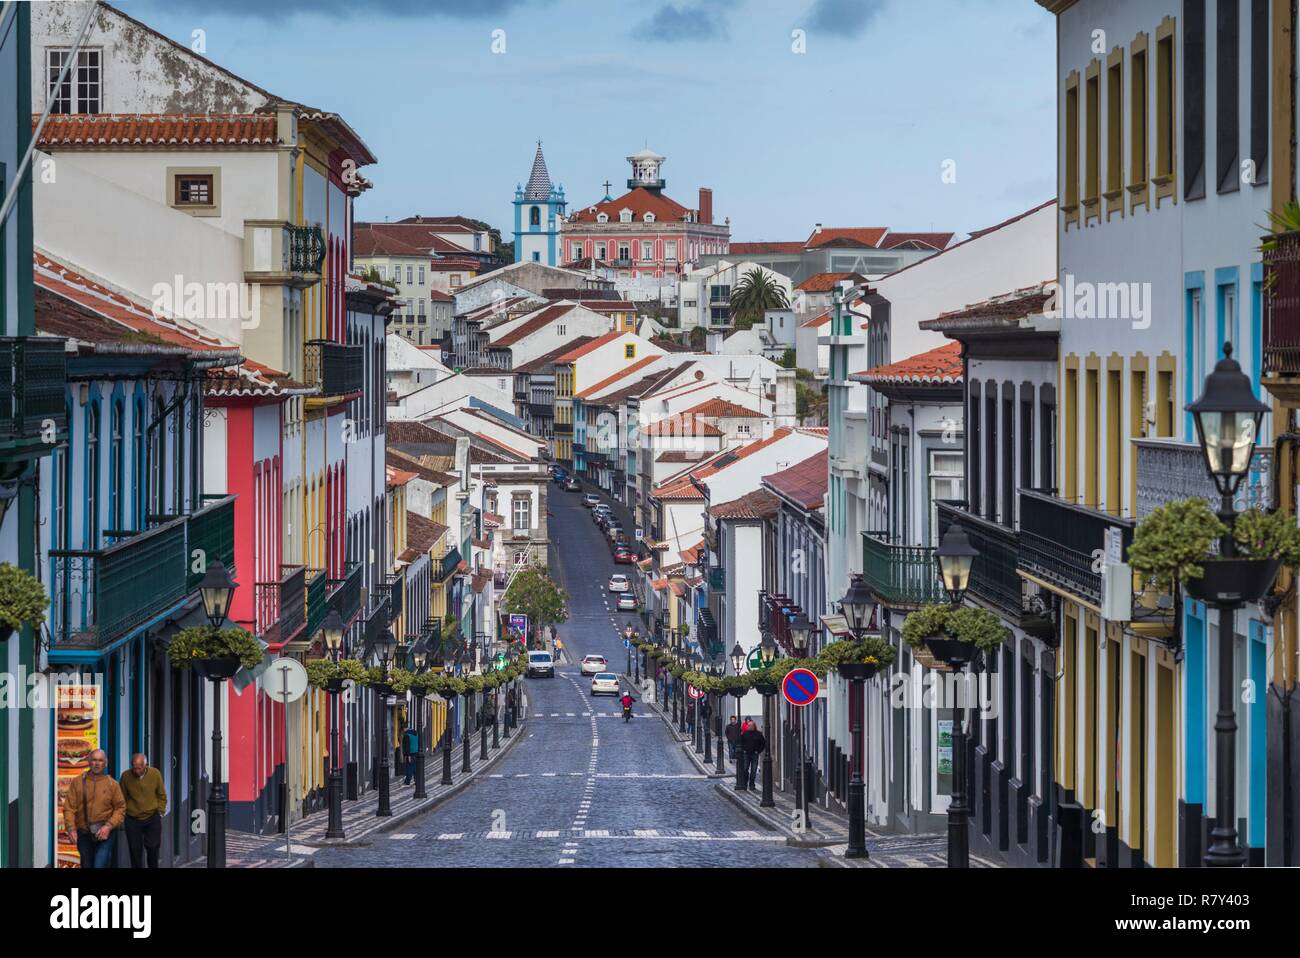 Portugal, Azores, Terceira Island, Angra do Heroismo, Rua da Se street Stock Photo